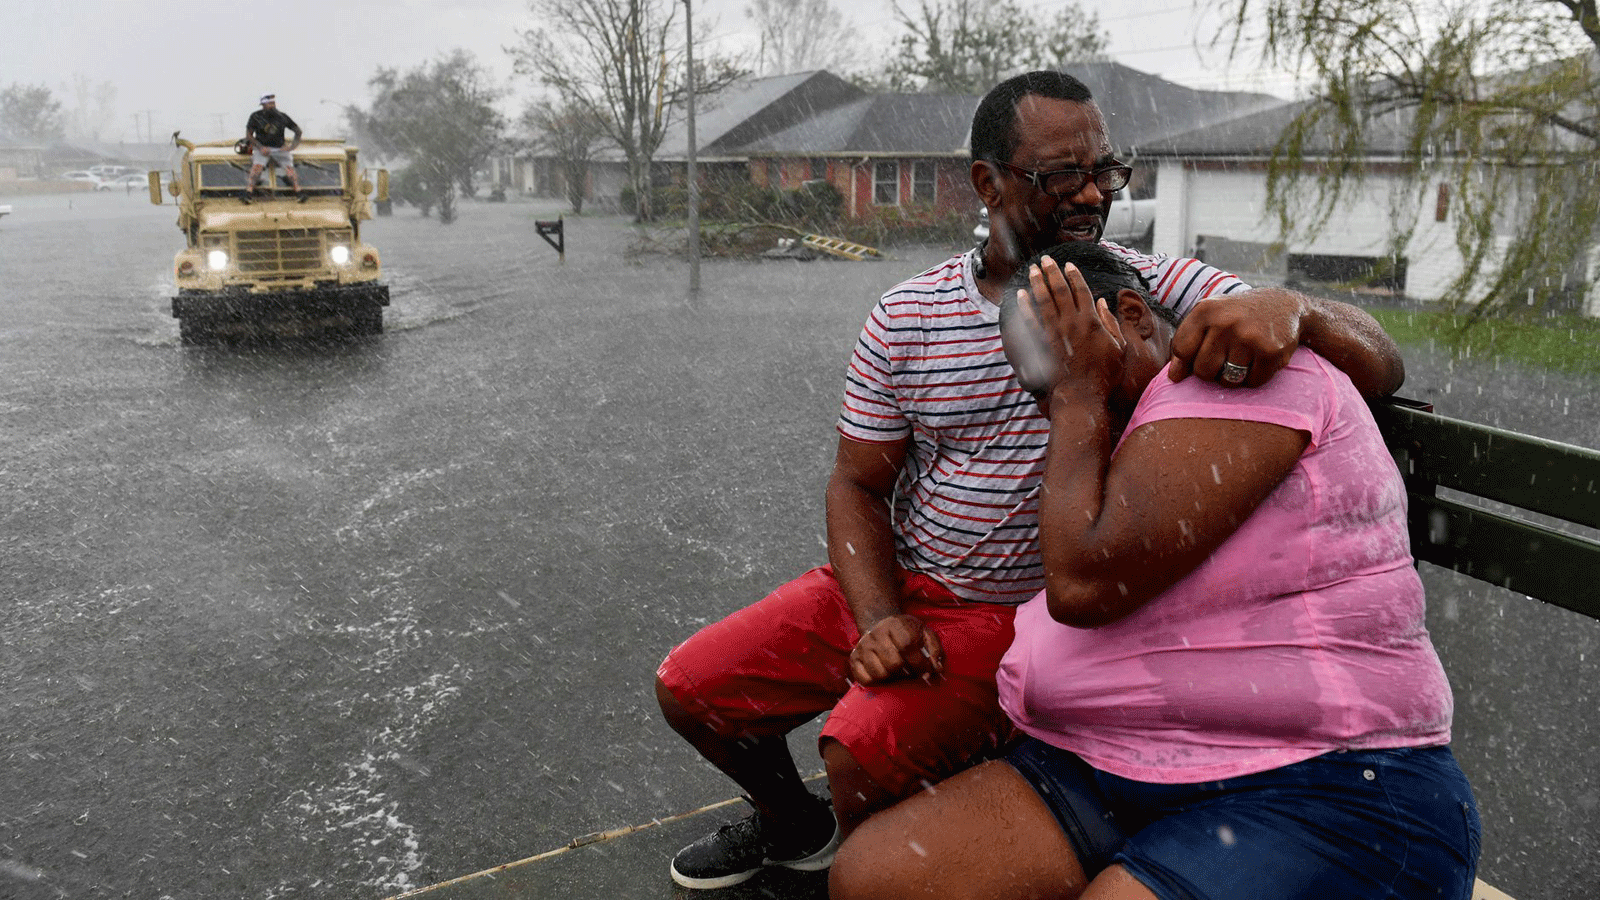 أشخاص حوصروا في أمطار غزيرة مُفاجئة في حي غمرته الفيضانات في لابلاس، لويزيانا، حيث تساعد شاحنة متطوعة تعمل بالمياه العالية الأشخاص الذين تم إجلاؤهم من منازلهم في المنطقة. في 30 آب/ أغسطس 2021 